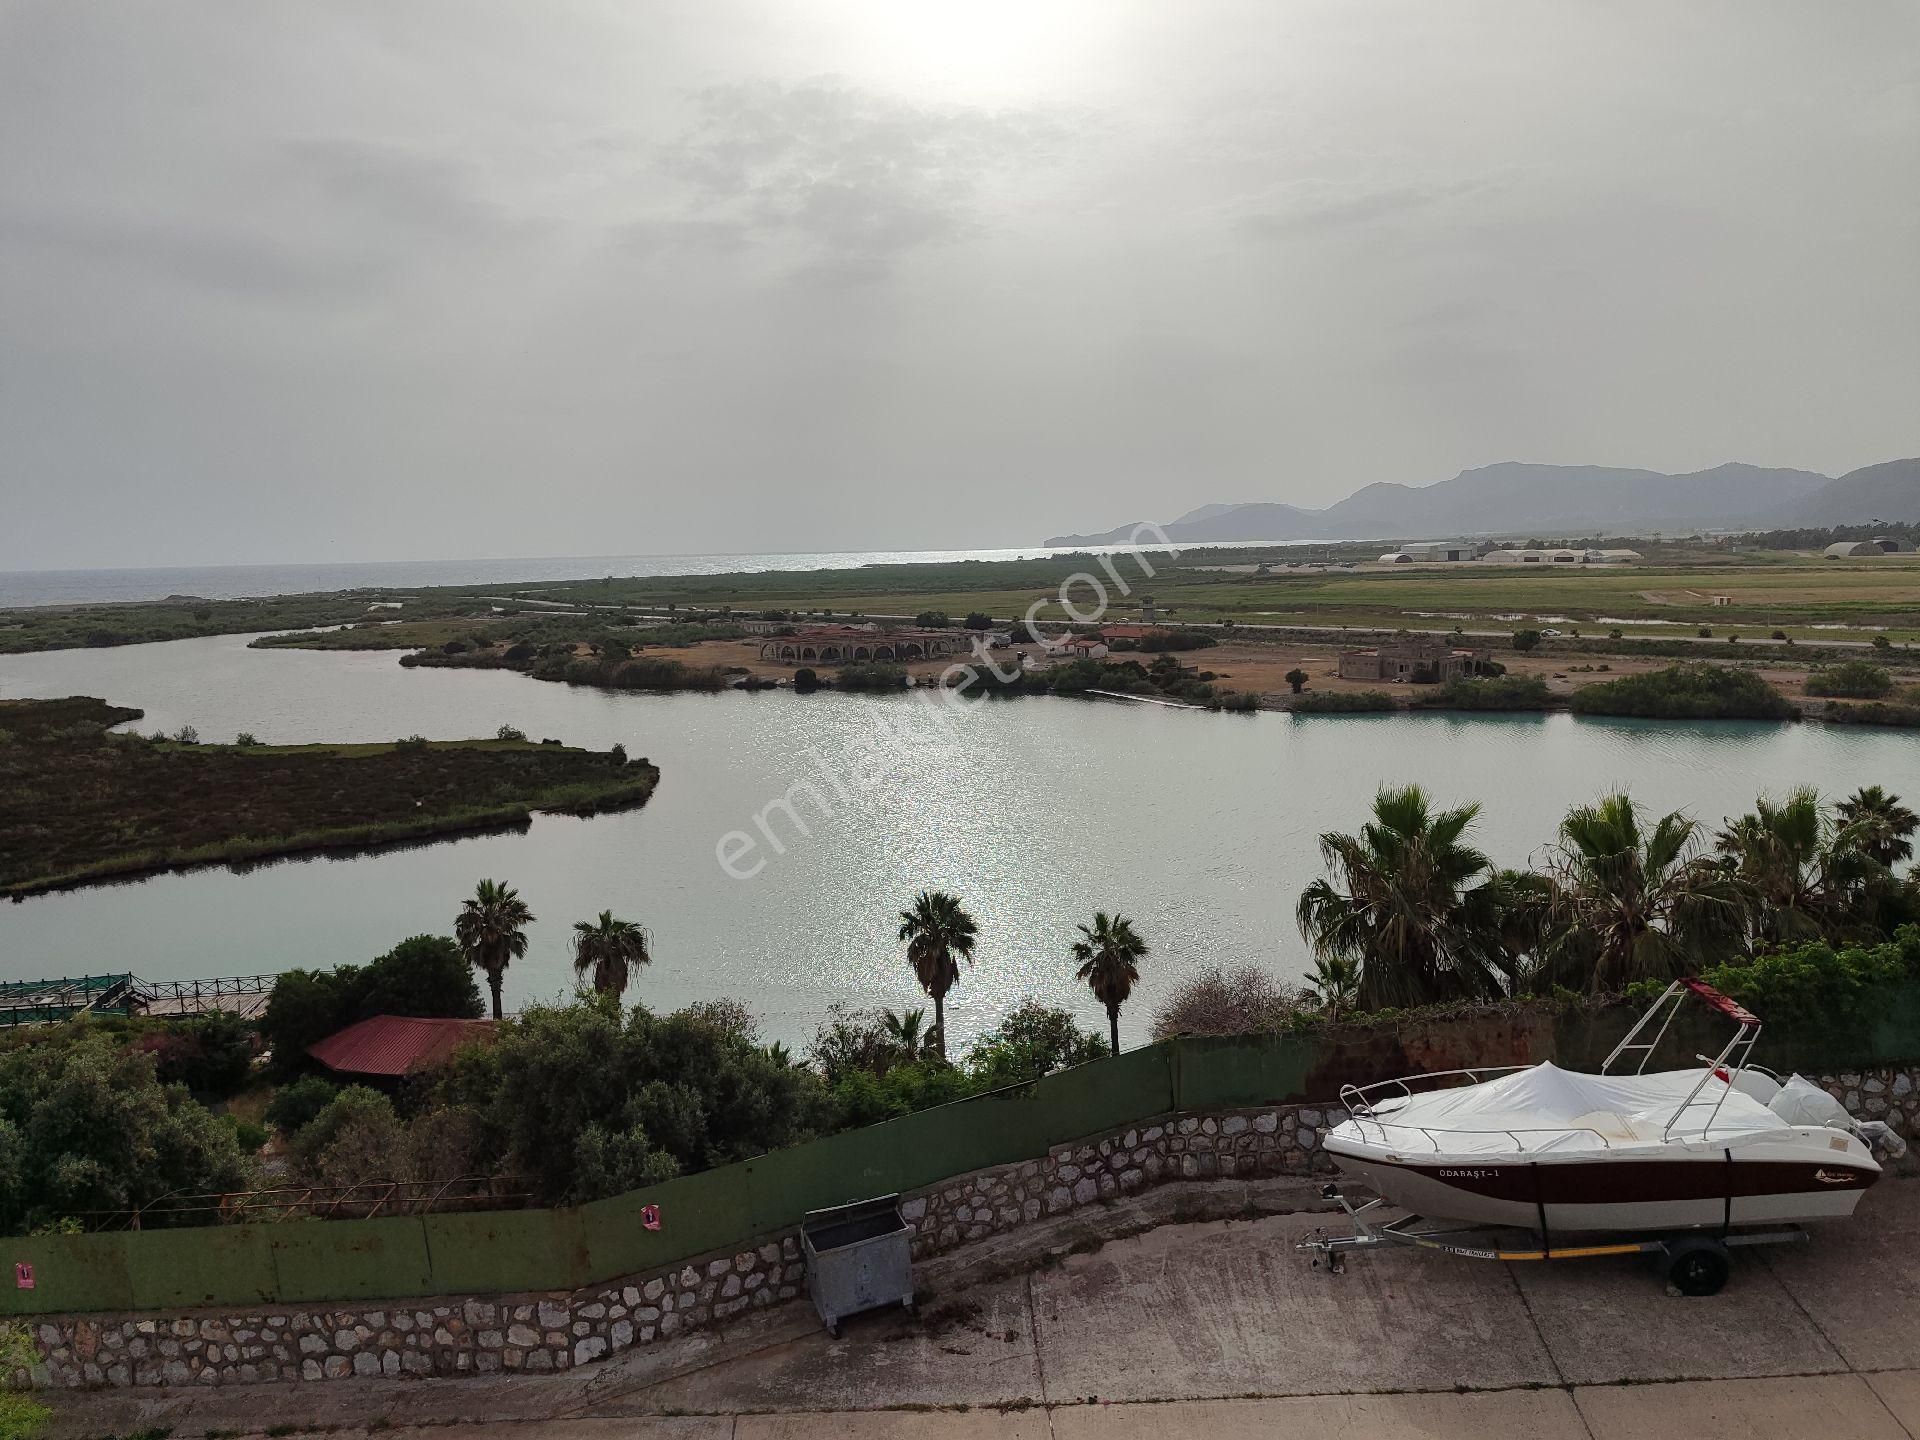 Dalaman Ege Satılık Villa Dalaman Eska incebel tatil sitesinde satılık fiyat 4.5 milyon